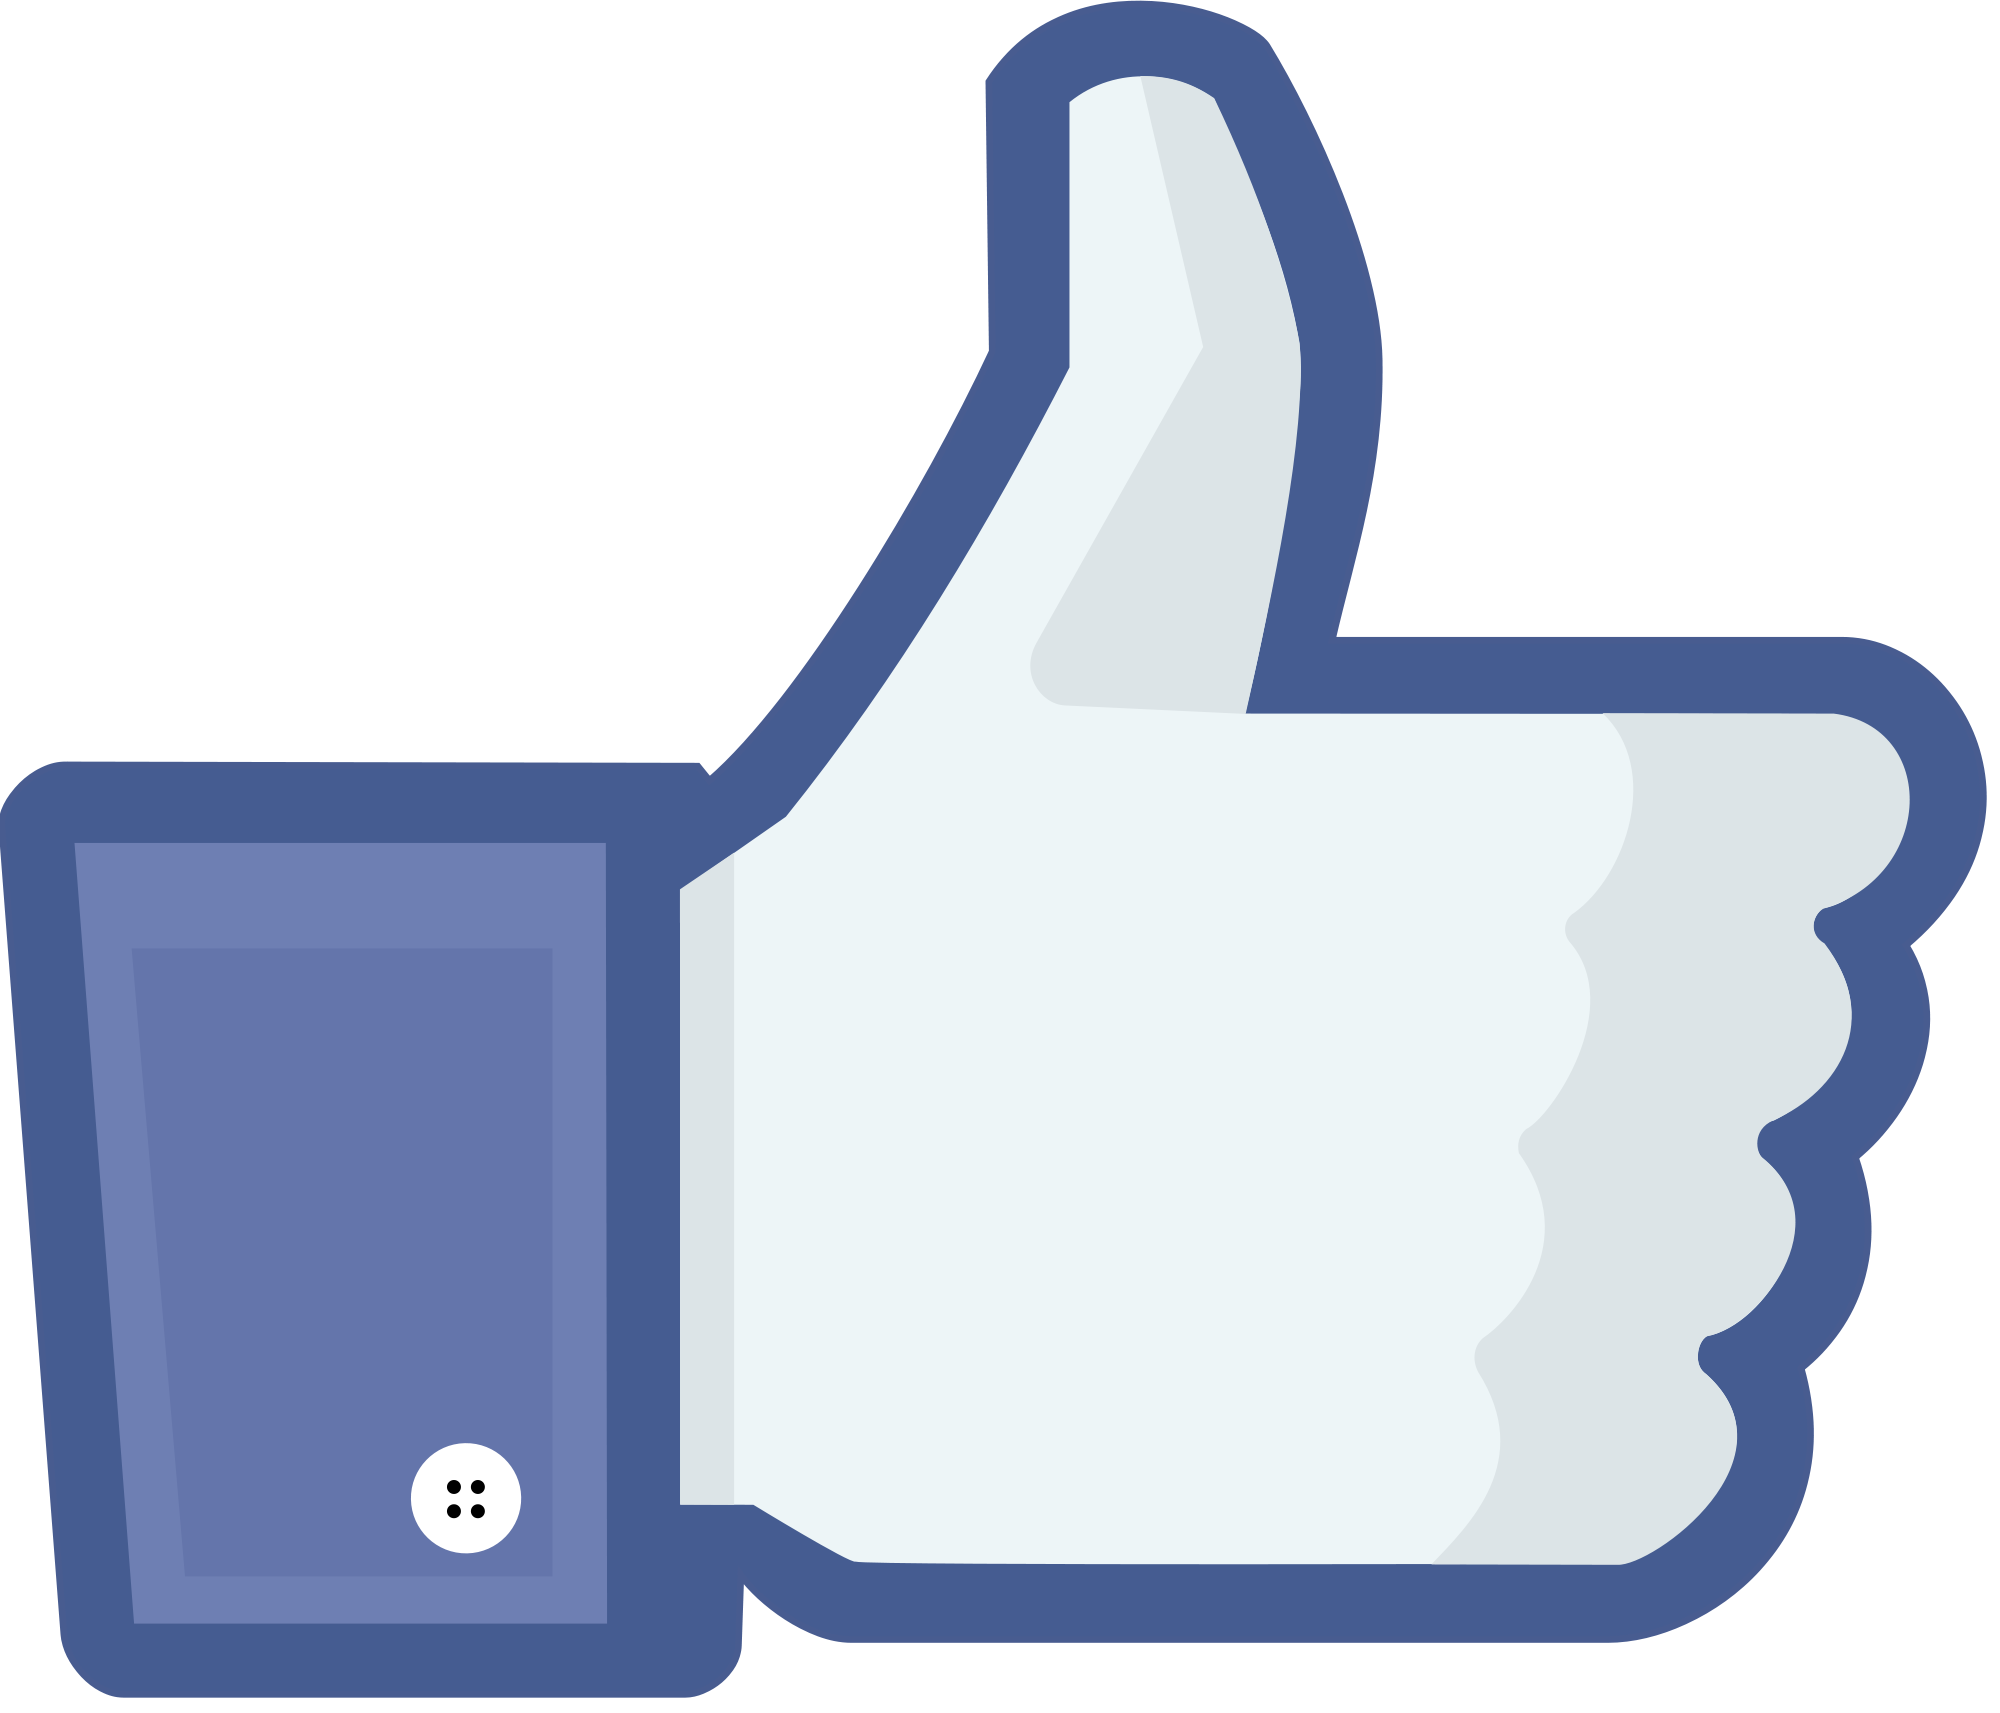 Lo que dice tu perfil de Facebook